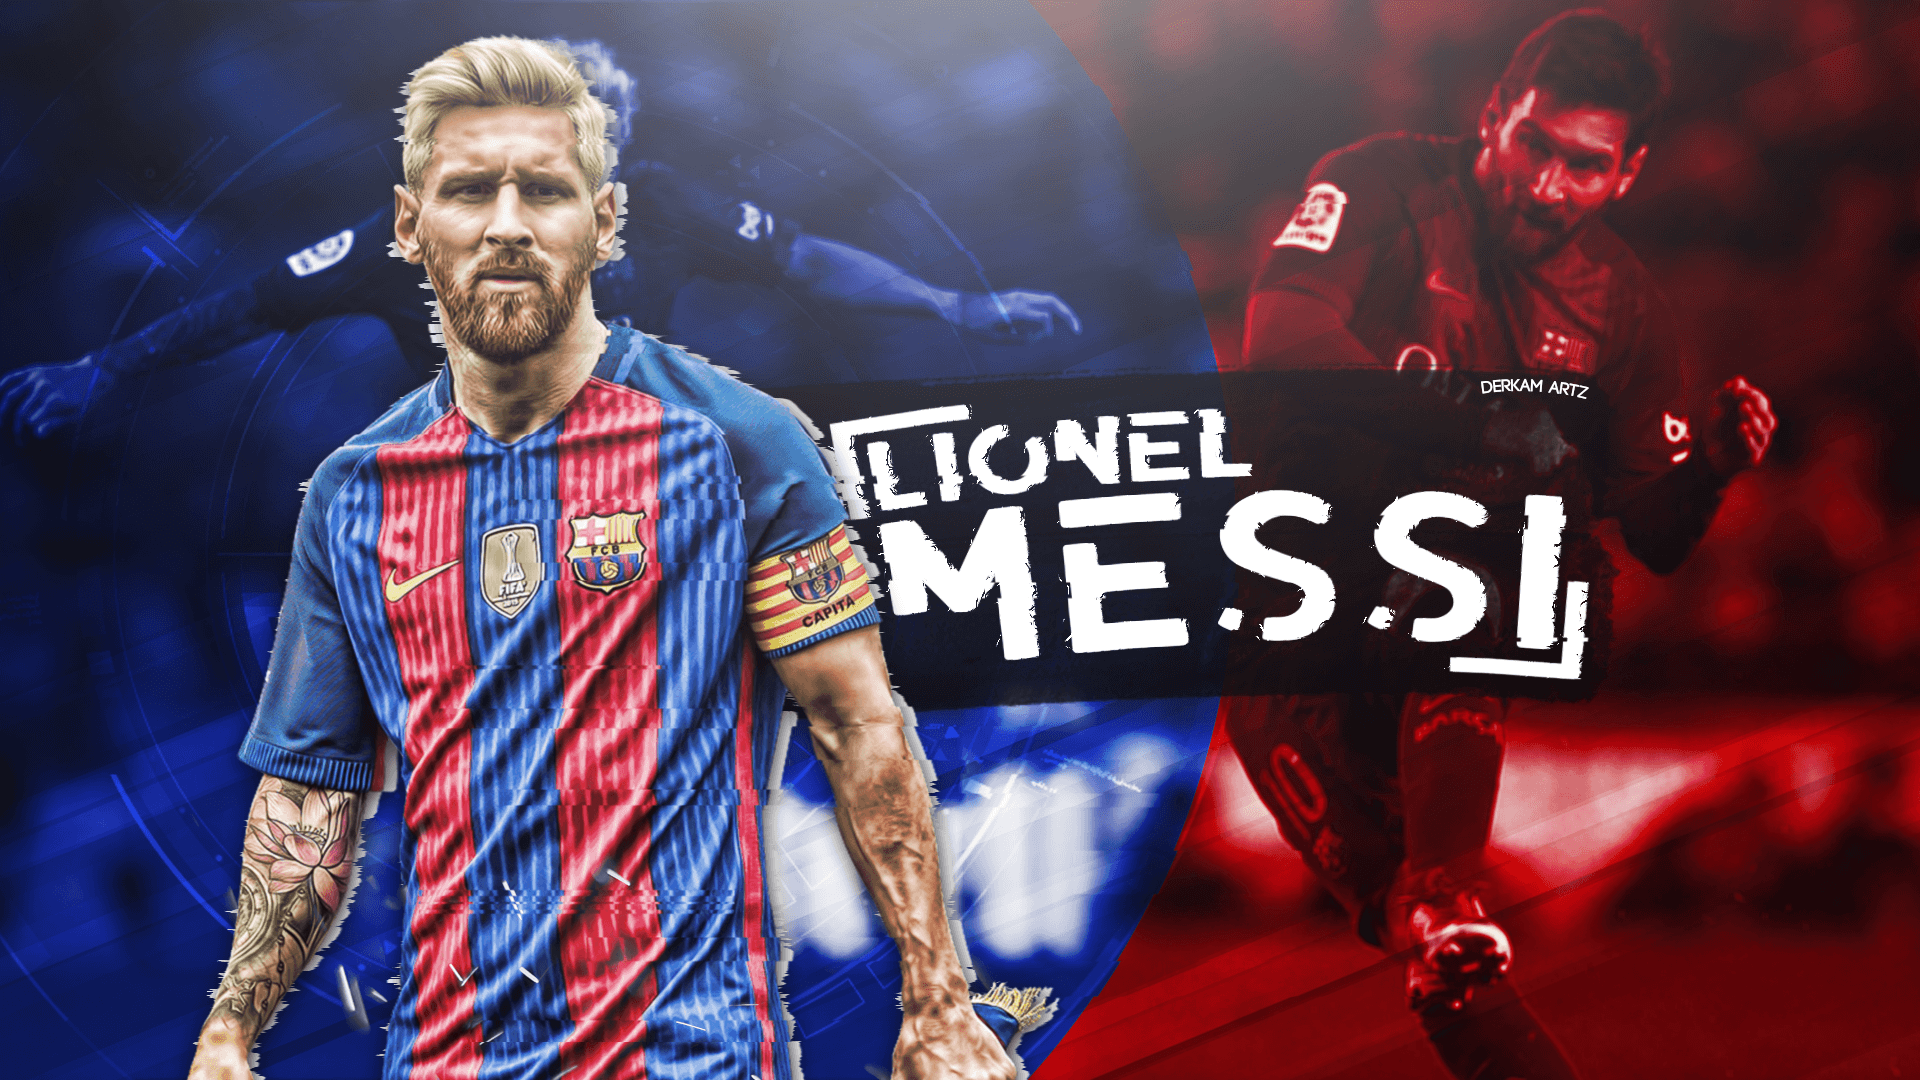 Lionel Messi Fondos de pantalla # 98617V7 | WallpapersExpert.com